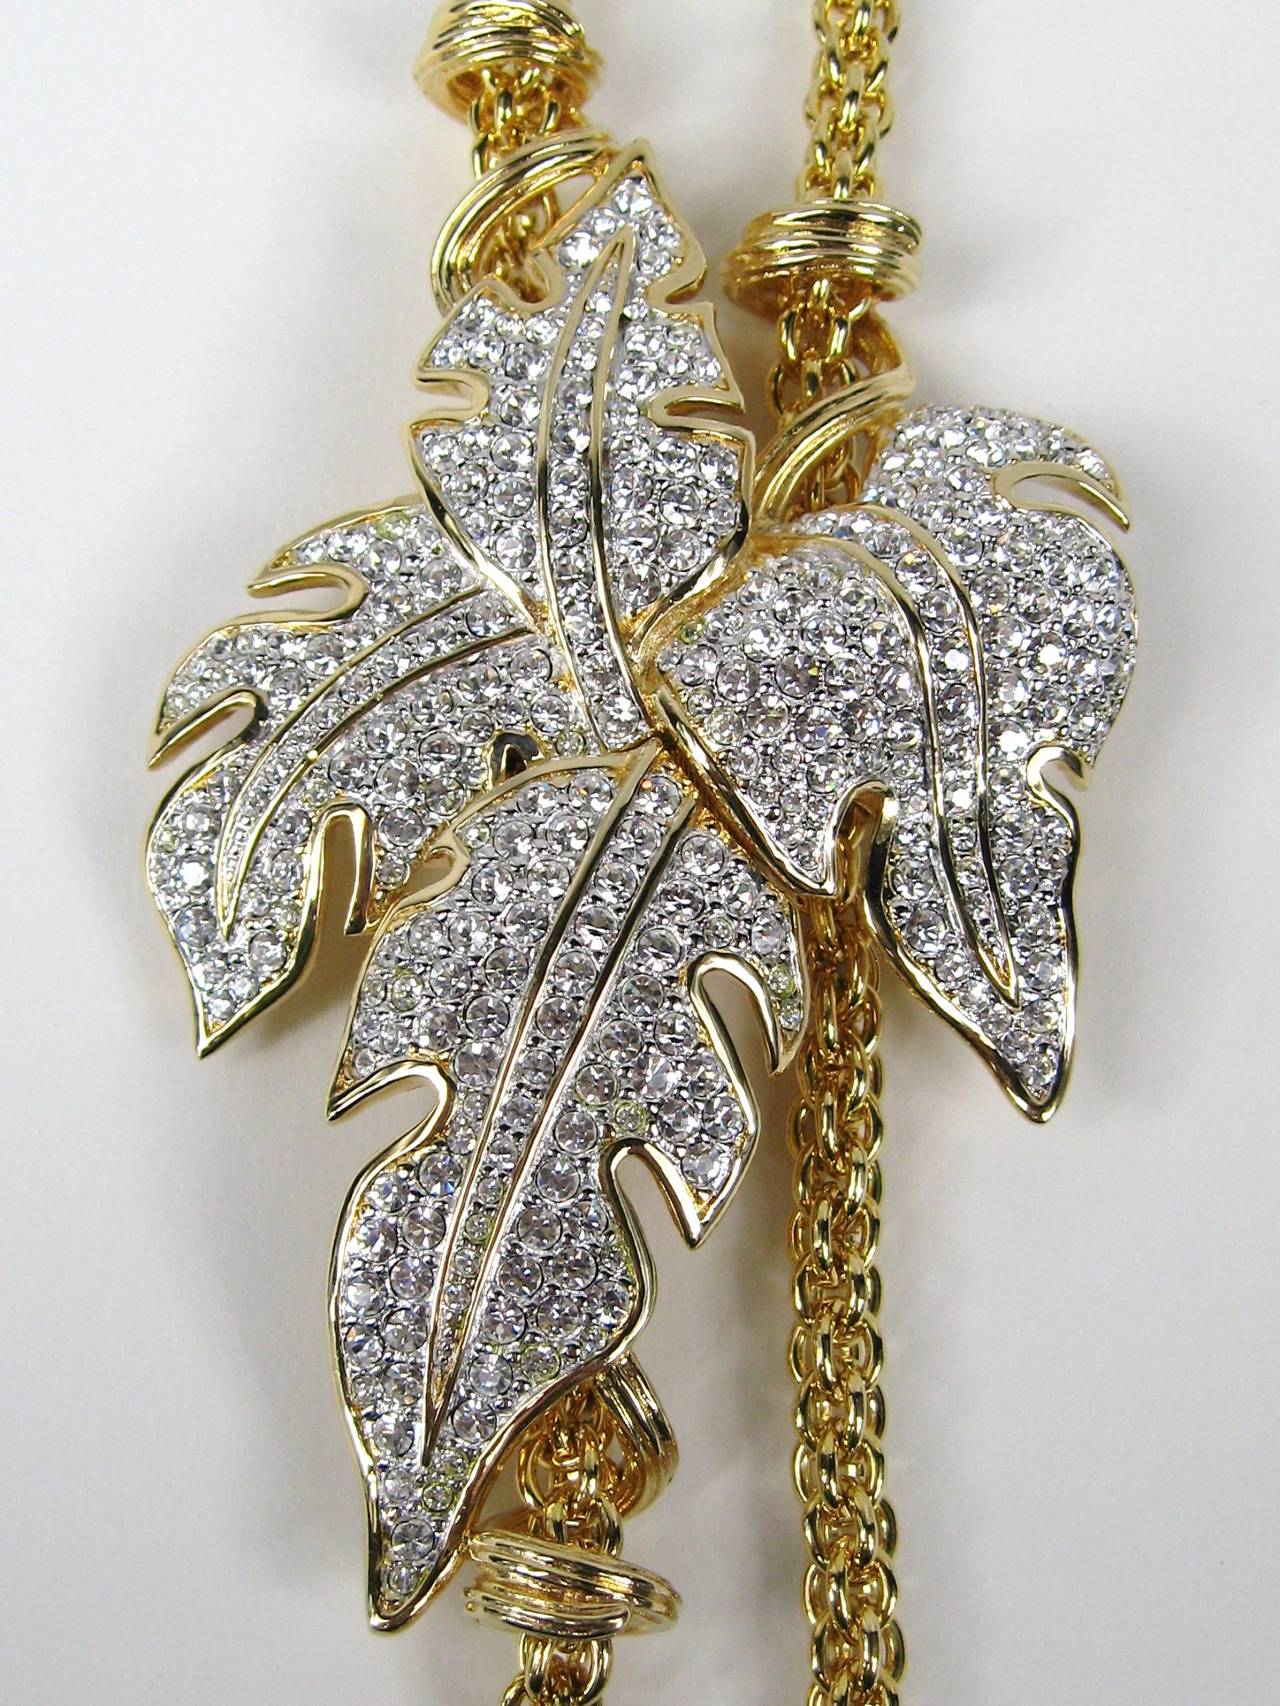 Massive Swarovski-Kristall-Halskette mit Faux-Lariat-Motiv. Messen -- Fällt bis auf 20 Zoll herunter. Das Blatt misst 3,47 Zoll x 2,15 Zoll. Gekauft in den späten 80er und frühen 90er Jahren. Dies ist ein sehr großes atemberaubendes Stück von